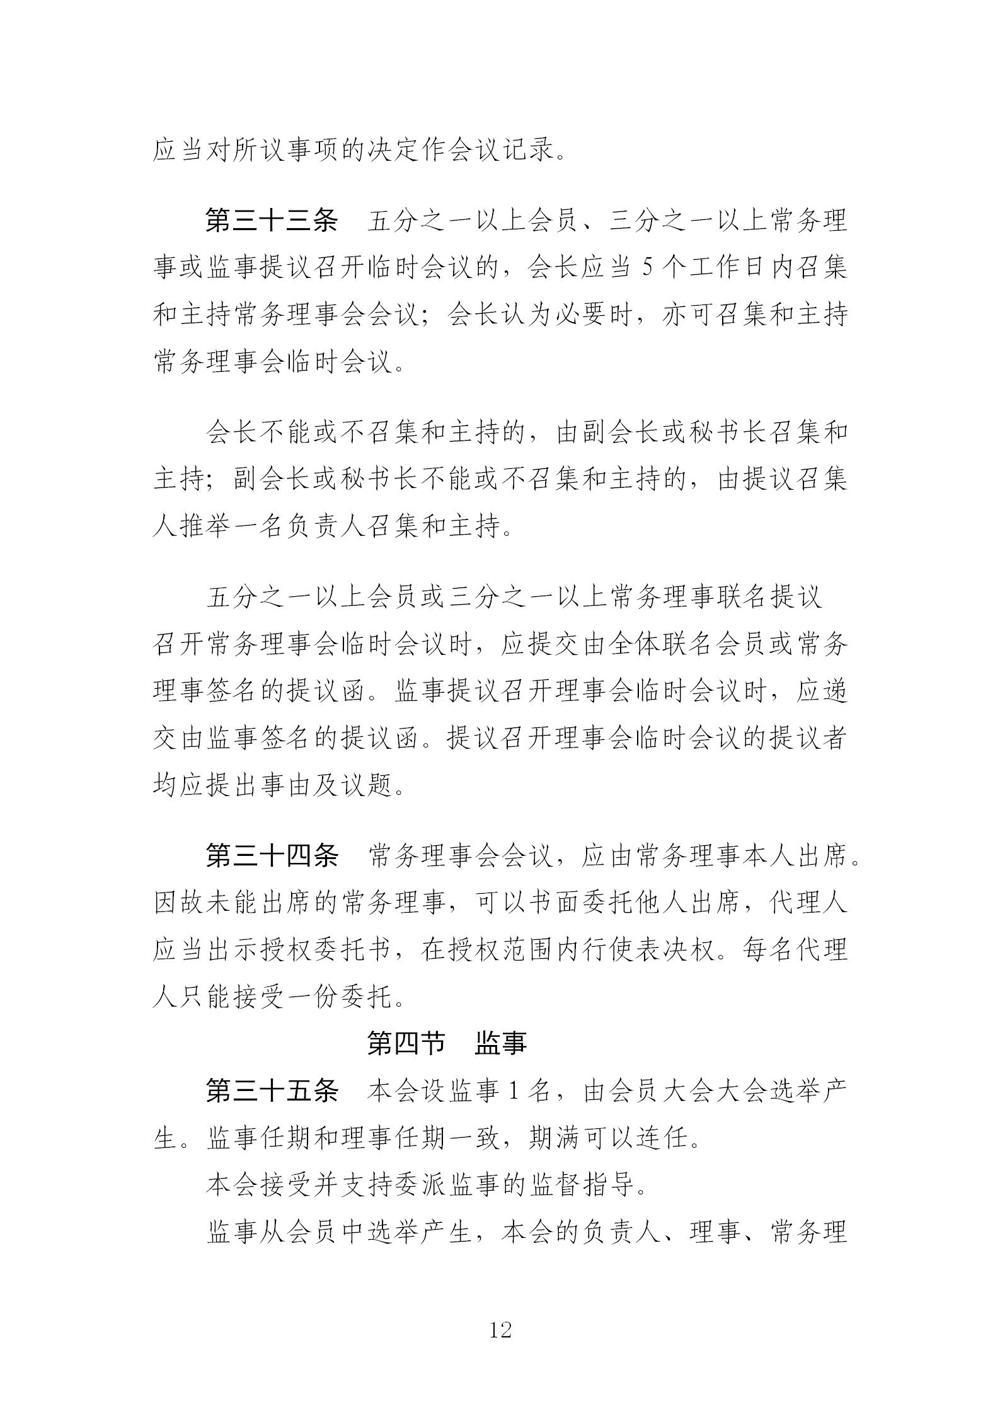 3-广东省羽毛球协会新章程20221107-根据民政厅修改意见修改_12